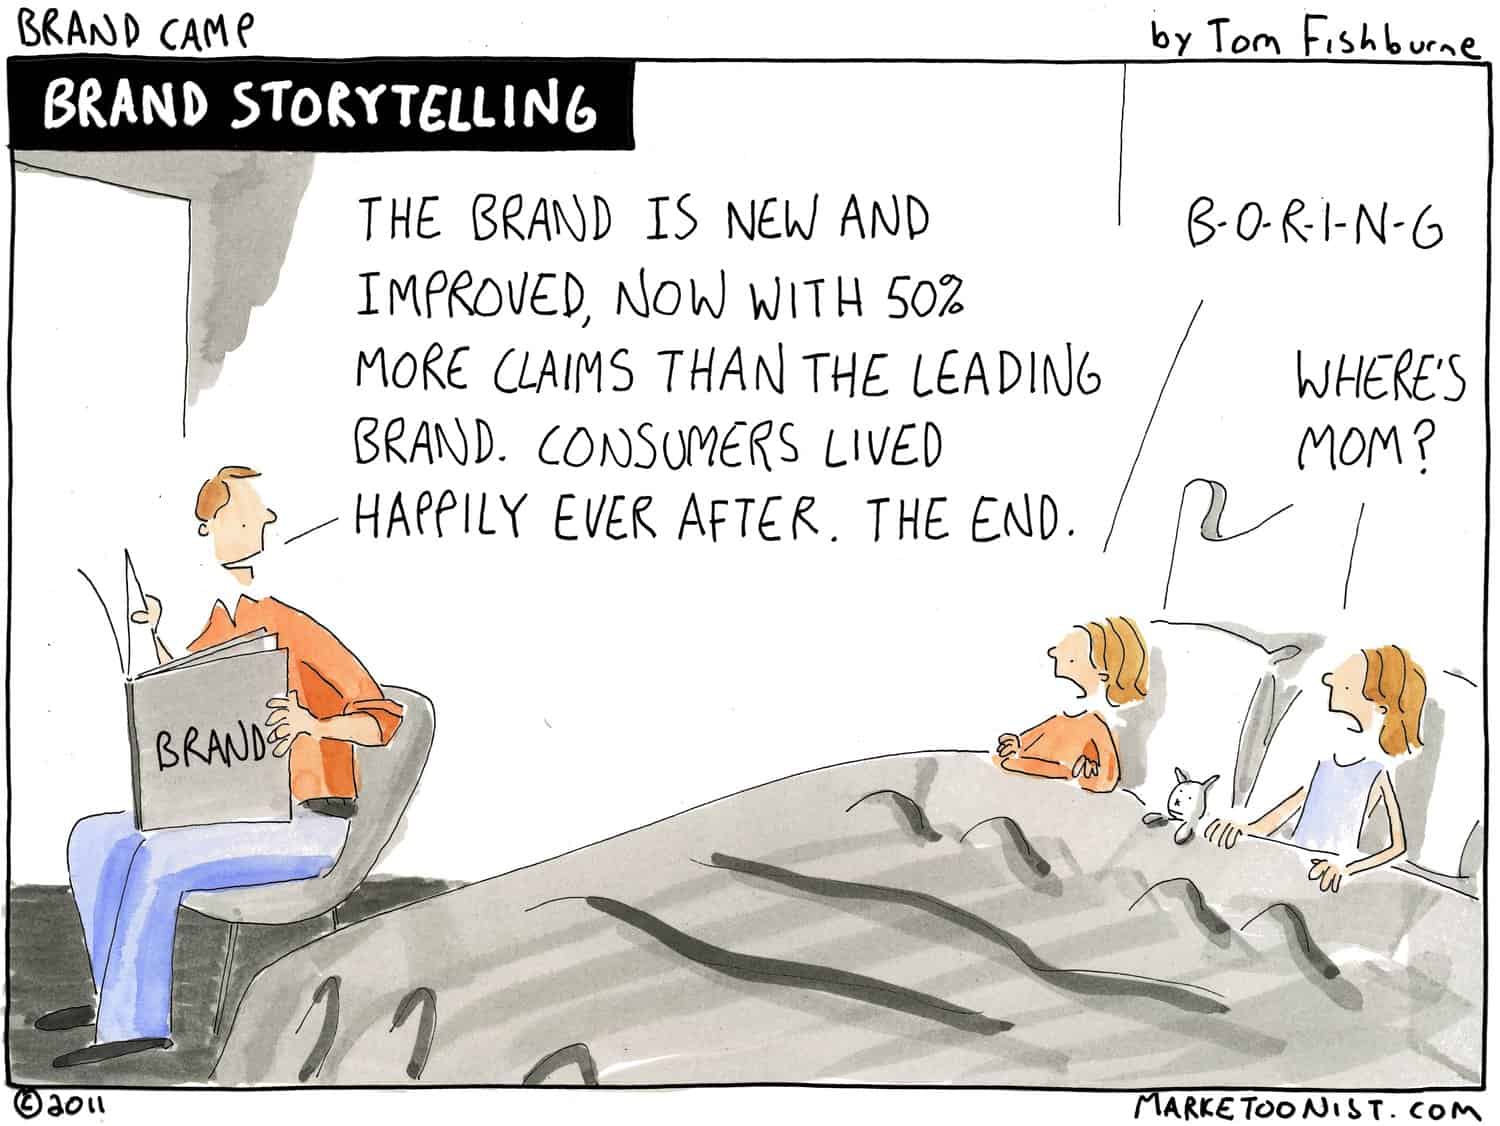 Story VS Brand Story-The Cartoonist